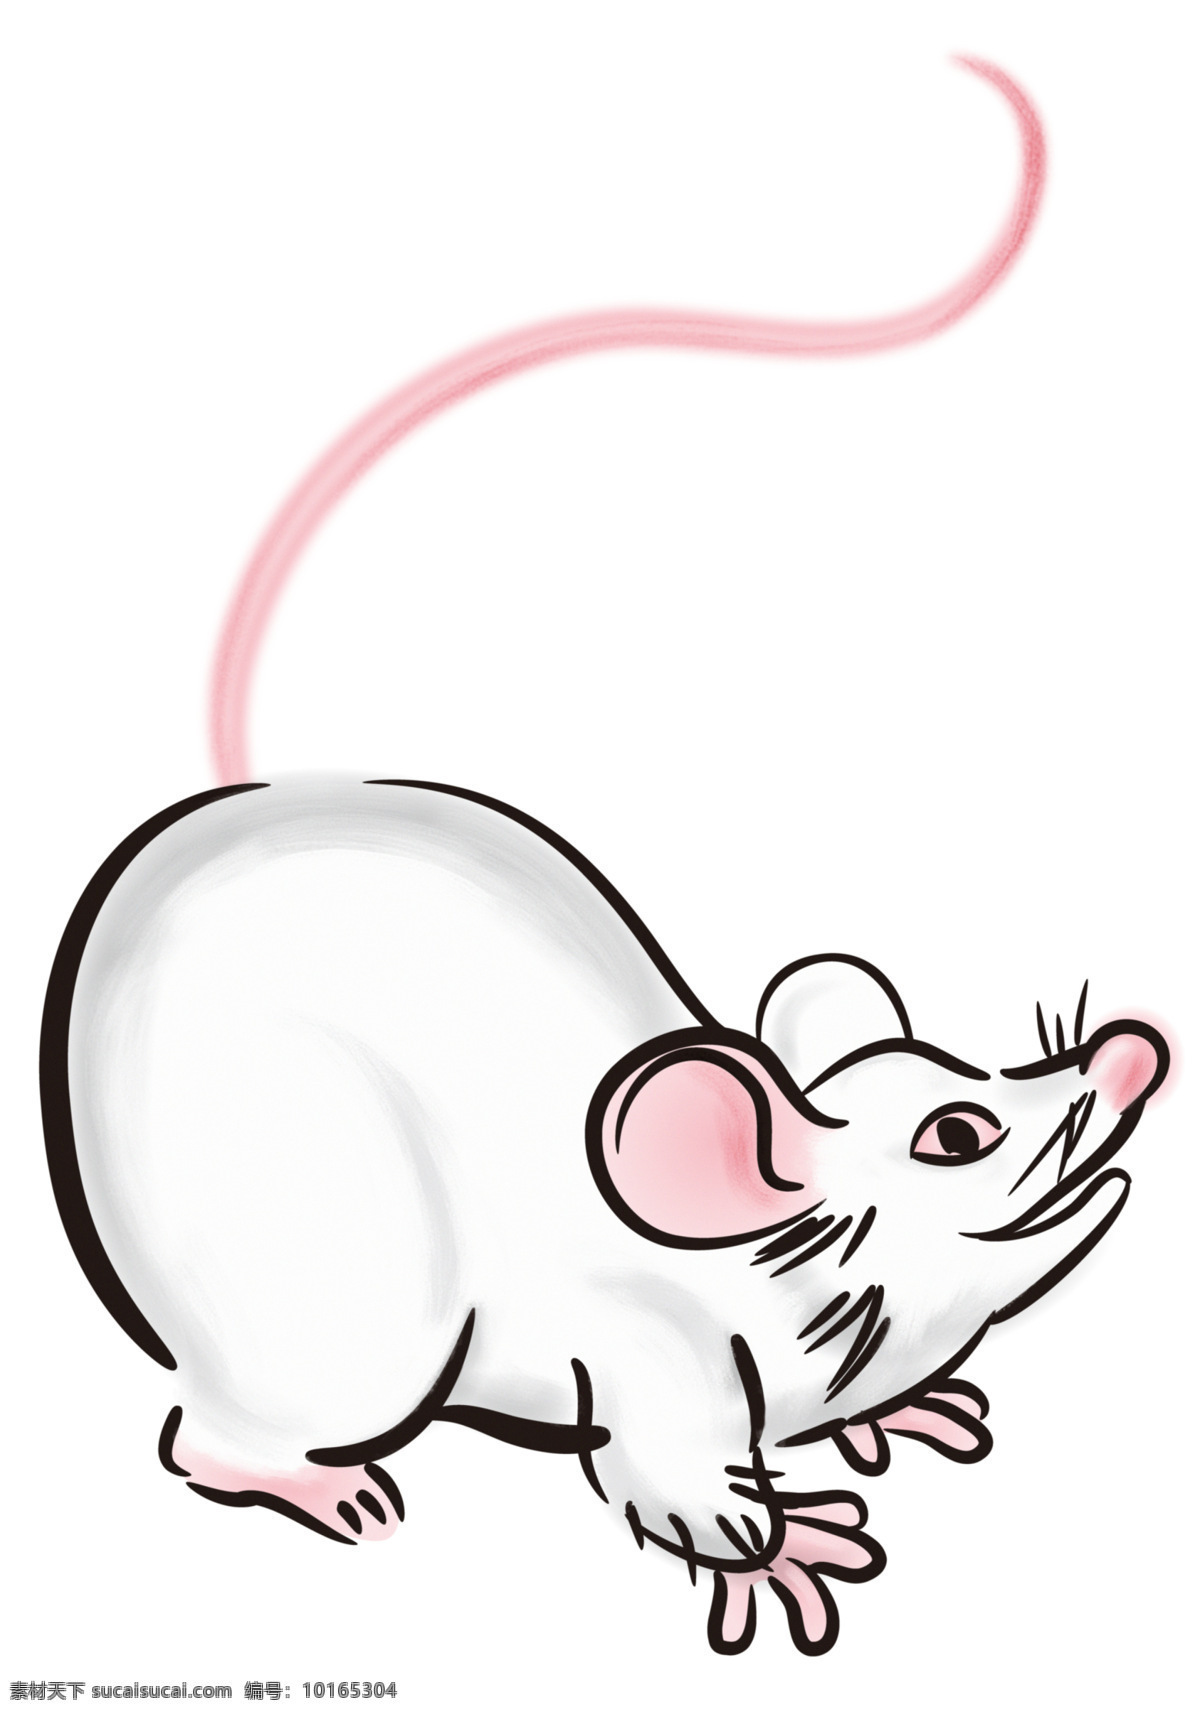 老鼠 鼠 鼠年 可爱 卡通 漫画 过年 生肖鼠 动漫动画